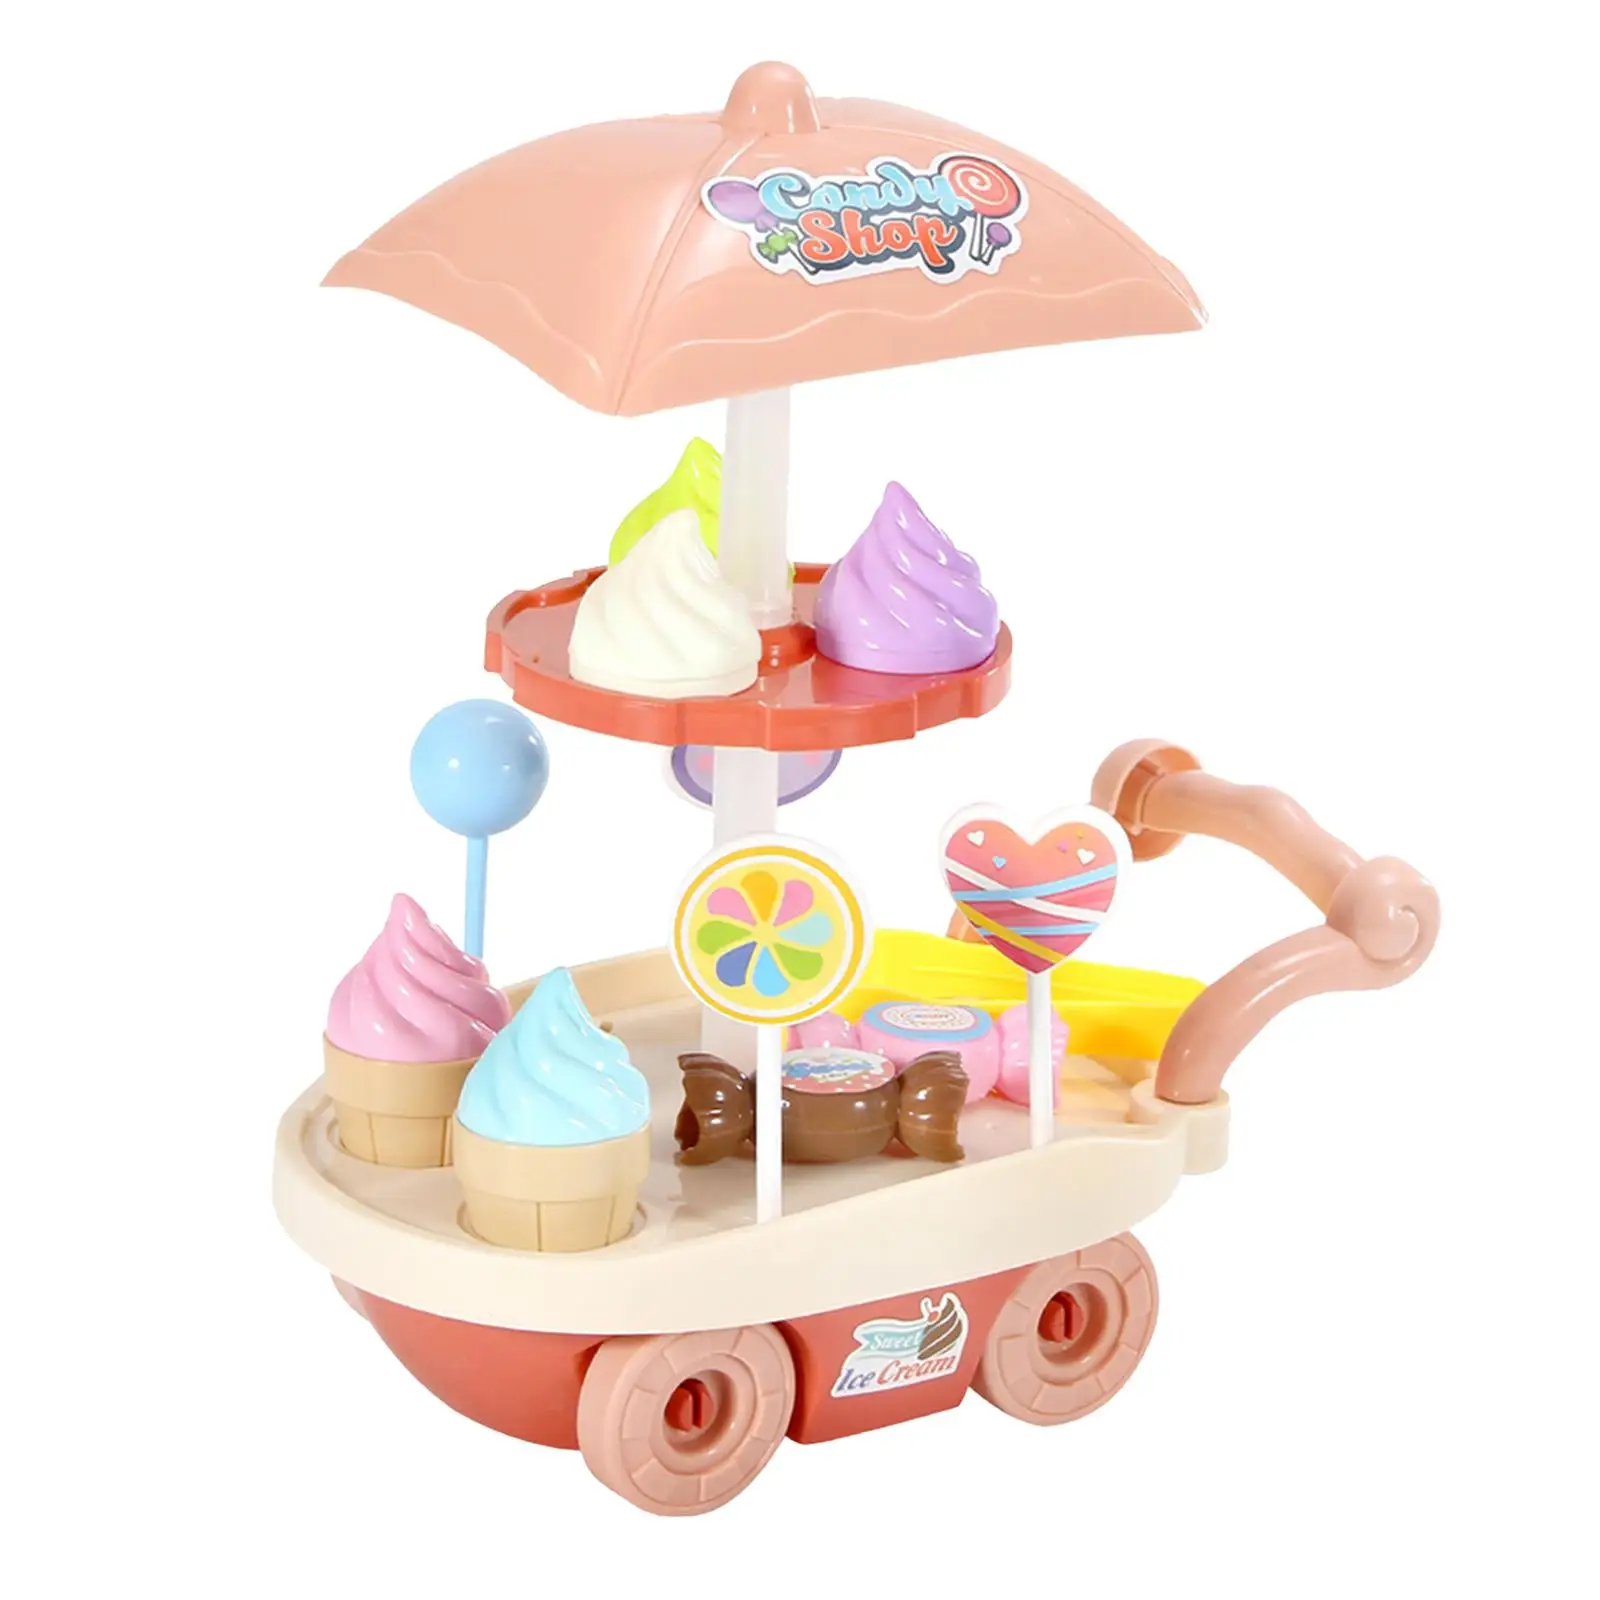 Candy fagylaltos kocsi játék Kiváló kivitelezés DIY Színlelj játékot szabadtéri játékhoz Fiúk Lányok Party Játék Születésnapi ajándék Gyerekek